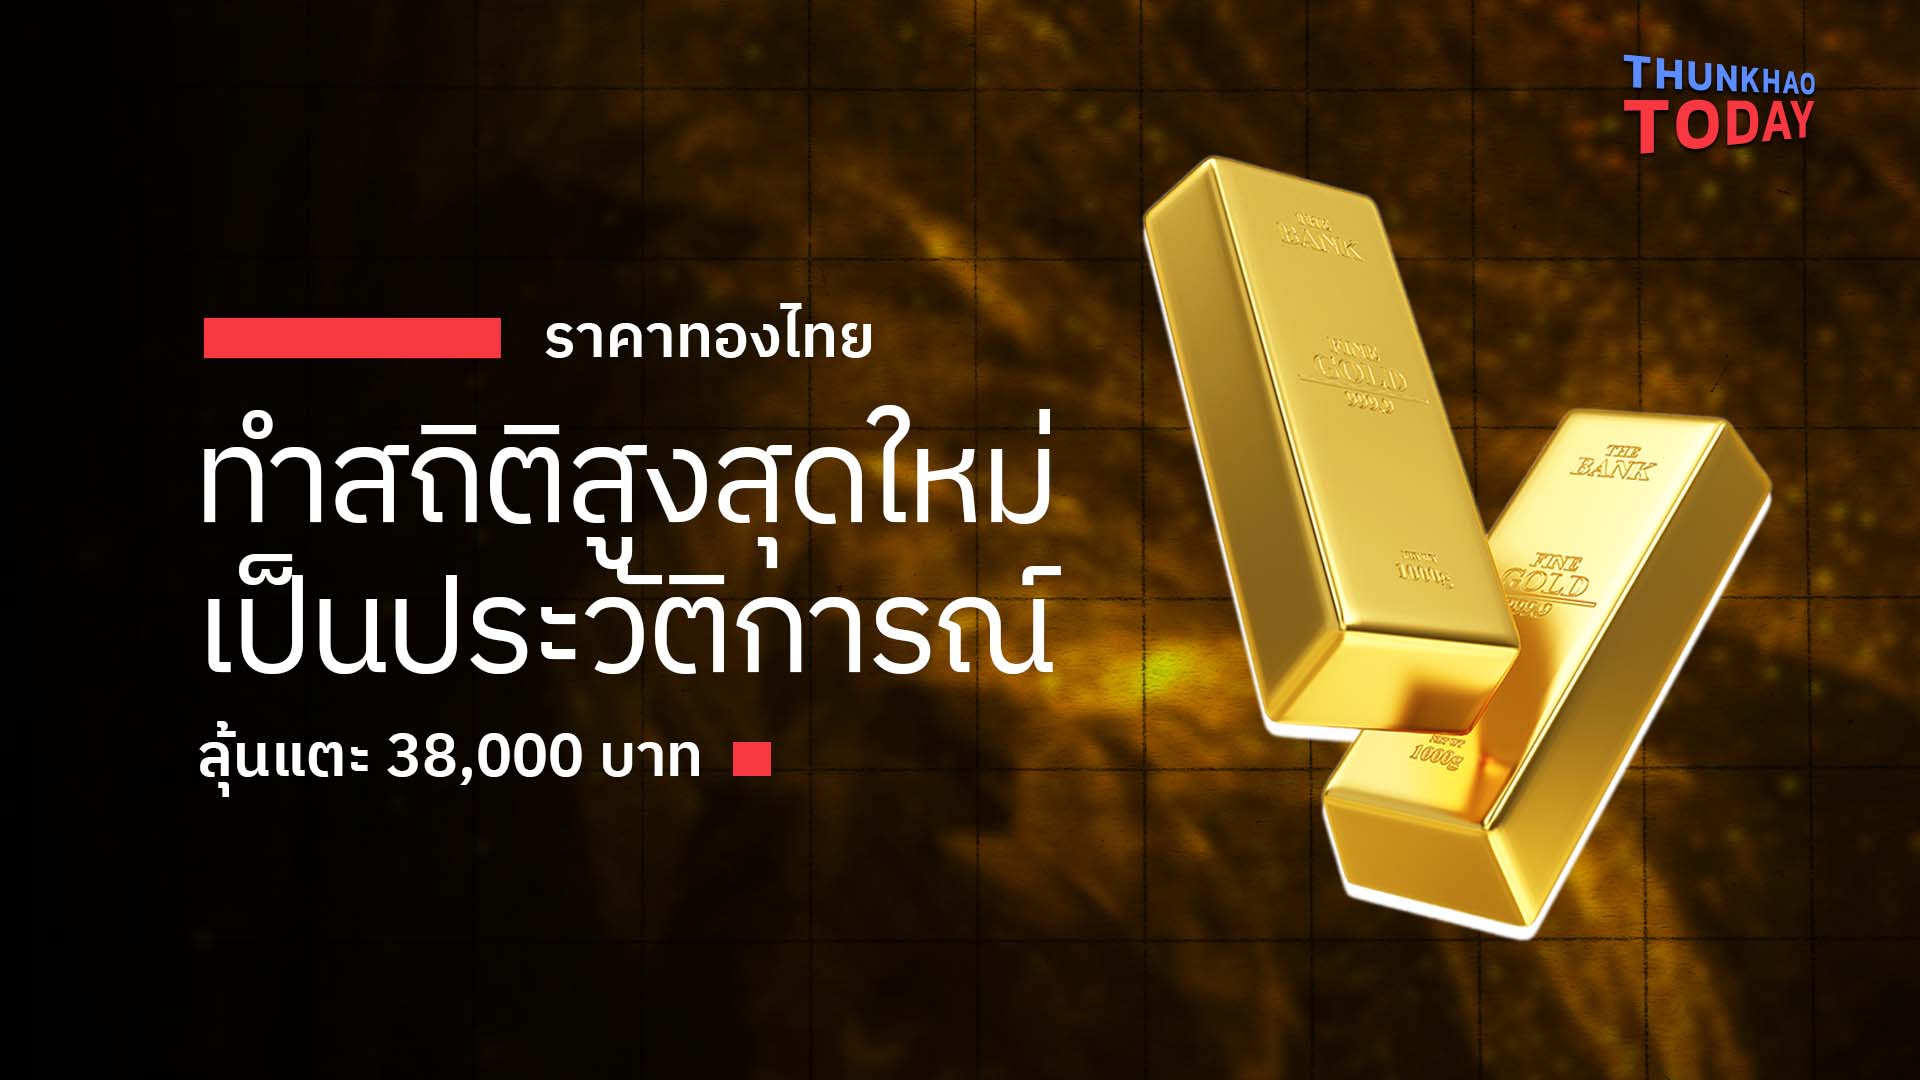 ราคาทองไทย ทำสถิติสูงสุดใหม่เป็นประวัติการณ์ ลุ้นแตะ 38,000 บาท